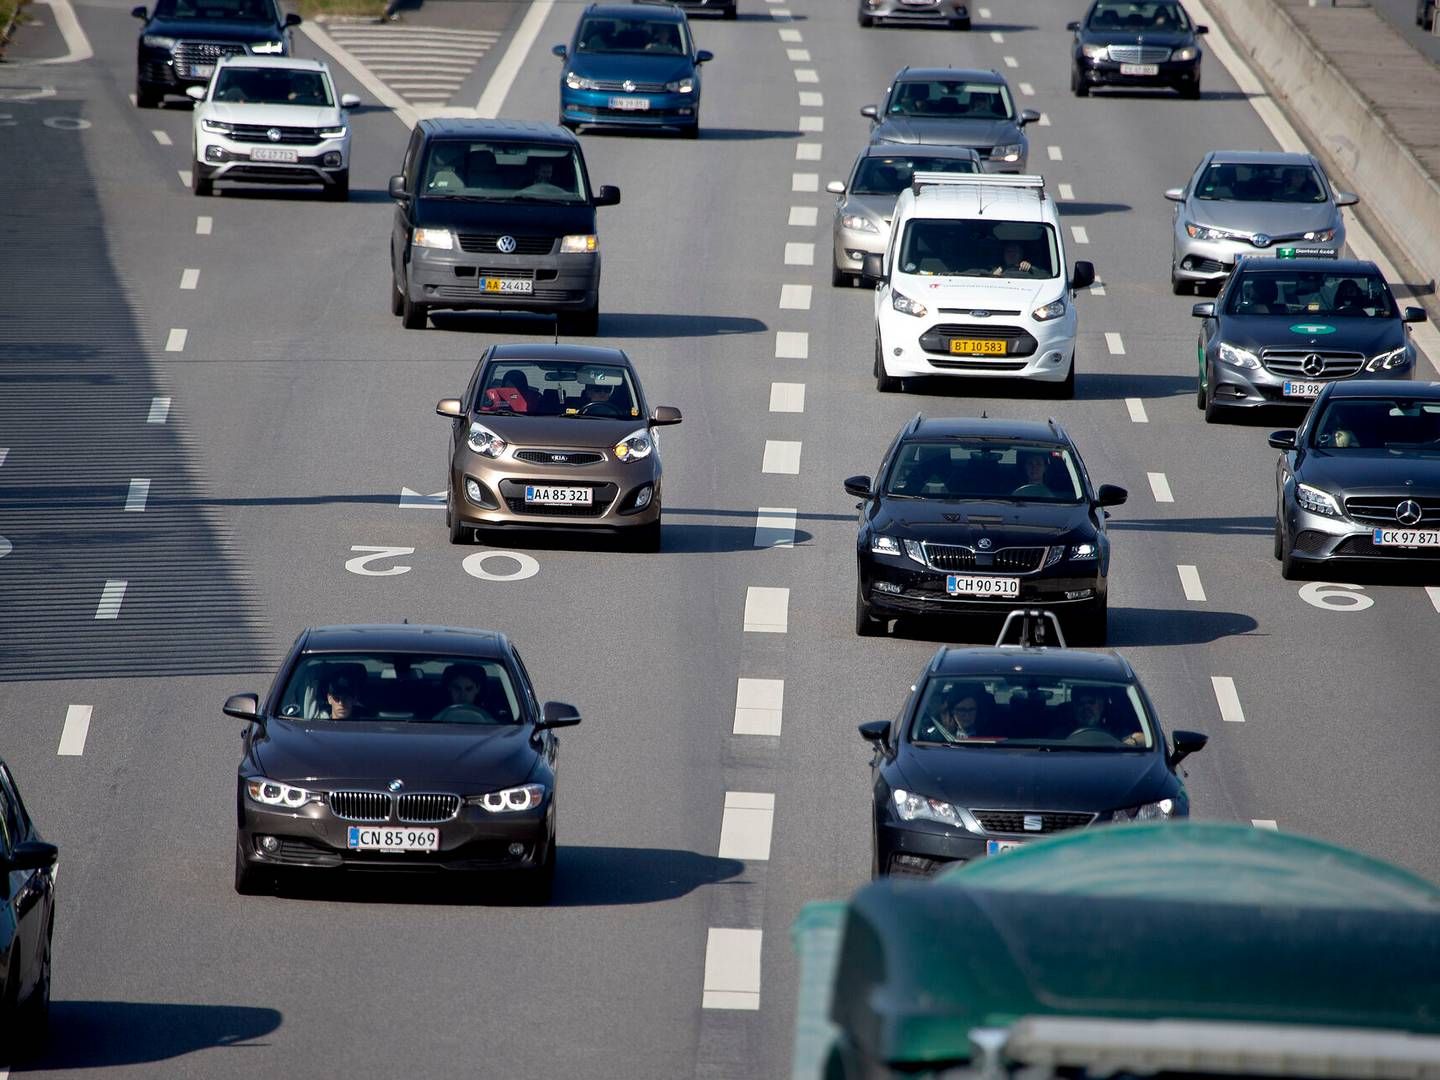 Udover en sænkelse af hastigheden på motorvejene, ønsker borgmestrene også en maksimal fartgrænse på 50 kilometer i timen på øvrige veje. | Foto: Finn Frandsen/Ritzau Scanpix